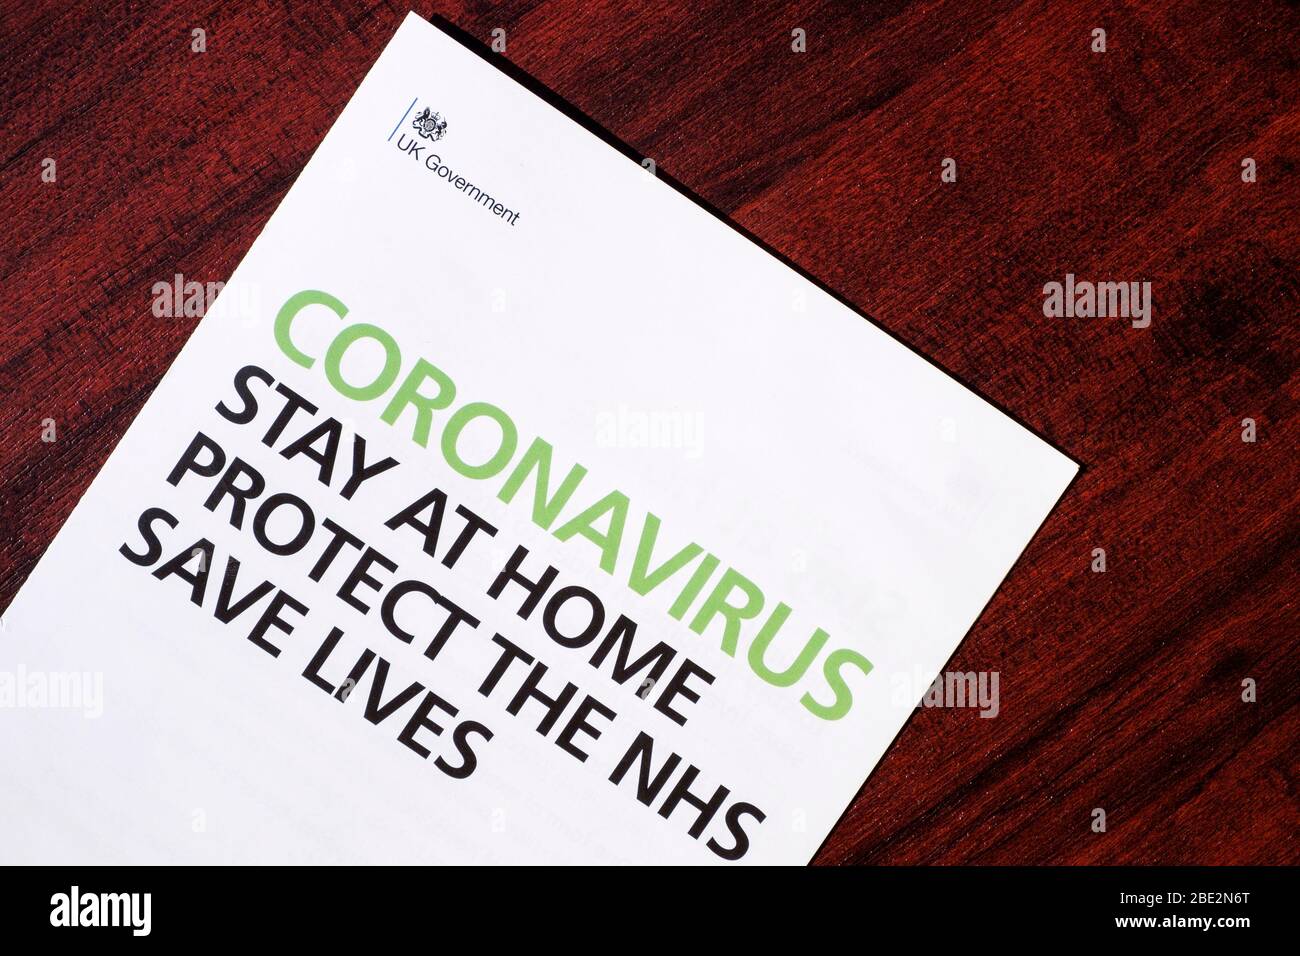 Un Gobierno británico permanecer en casa proteger NHS salvar vidas folleto que fue enviado con coronavirus carta del primer ministro Boris Johnson se muestra Foto de stock